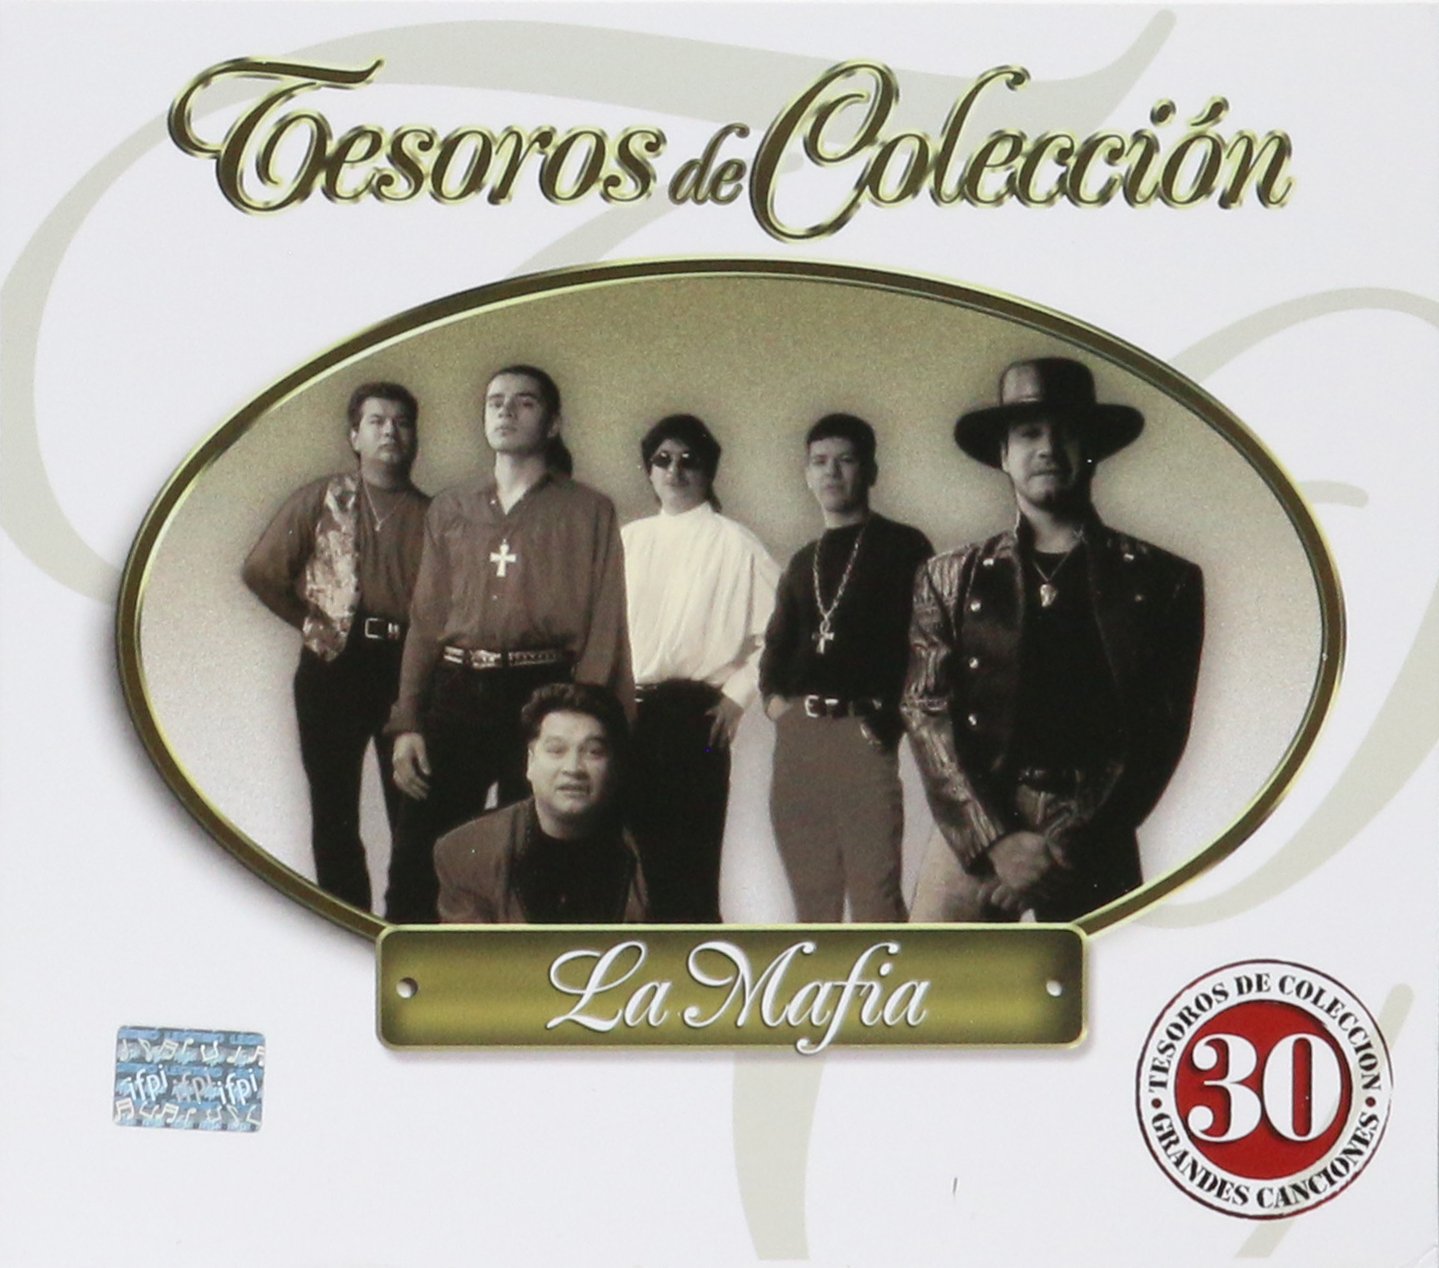 La Mafia - Tesoros de Coleccion *2007 (CD)